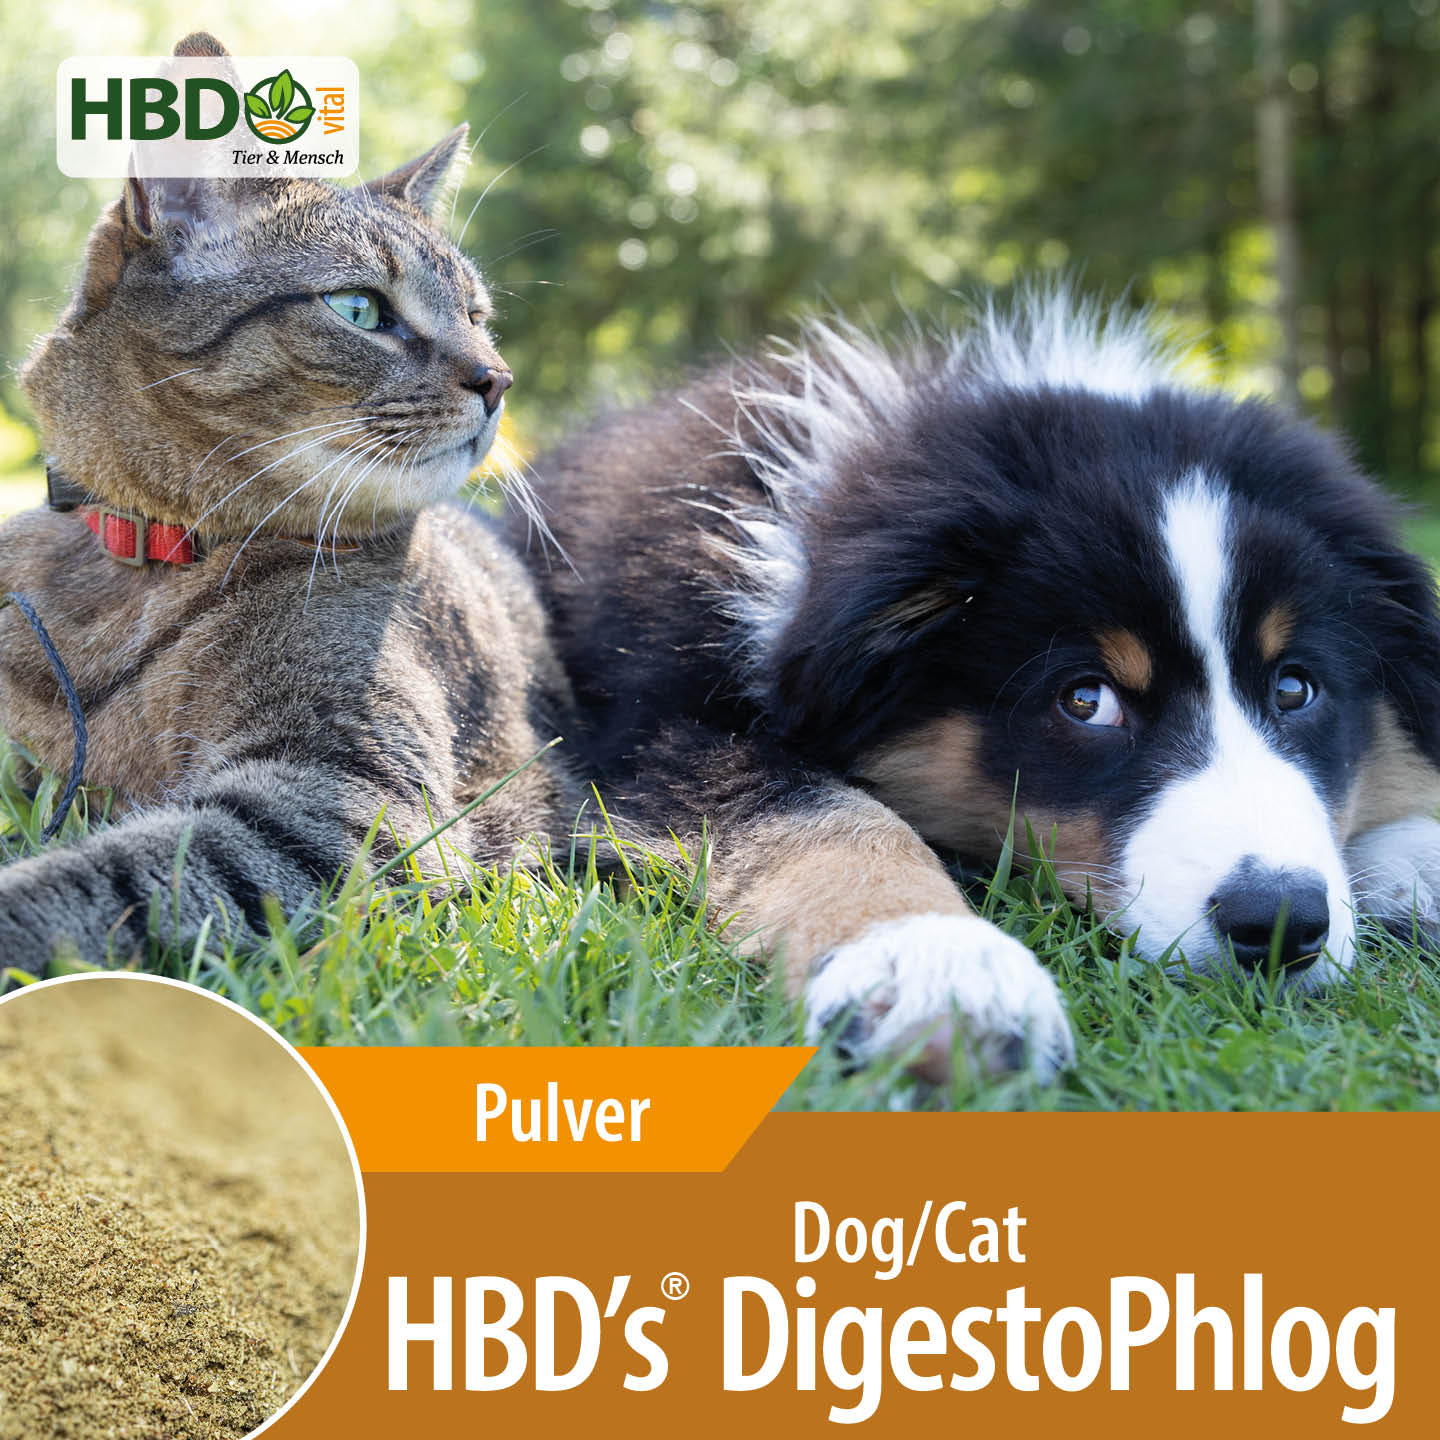 Shopbild für HBD's DigestoPhlog Dog/Cat - Das Bild zeigt den Produktnamen HBD's DigestoPhlog Dog/Cat sowie den Hinweis, dass es sich um ein Pulver handelt. Ein schwarz/weiß/brauner Hund und eine getigerte Katze sind zu sehen, was das Produkt visuell anspr